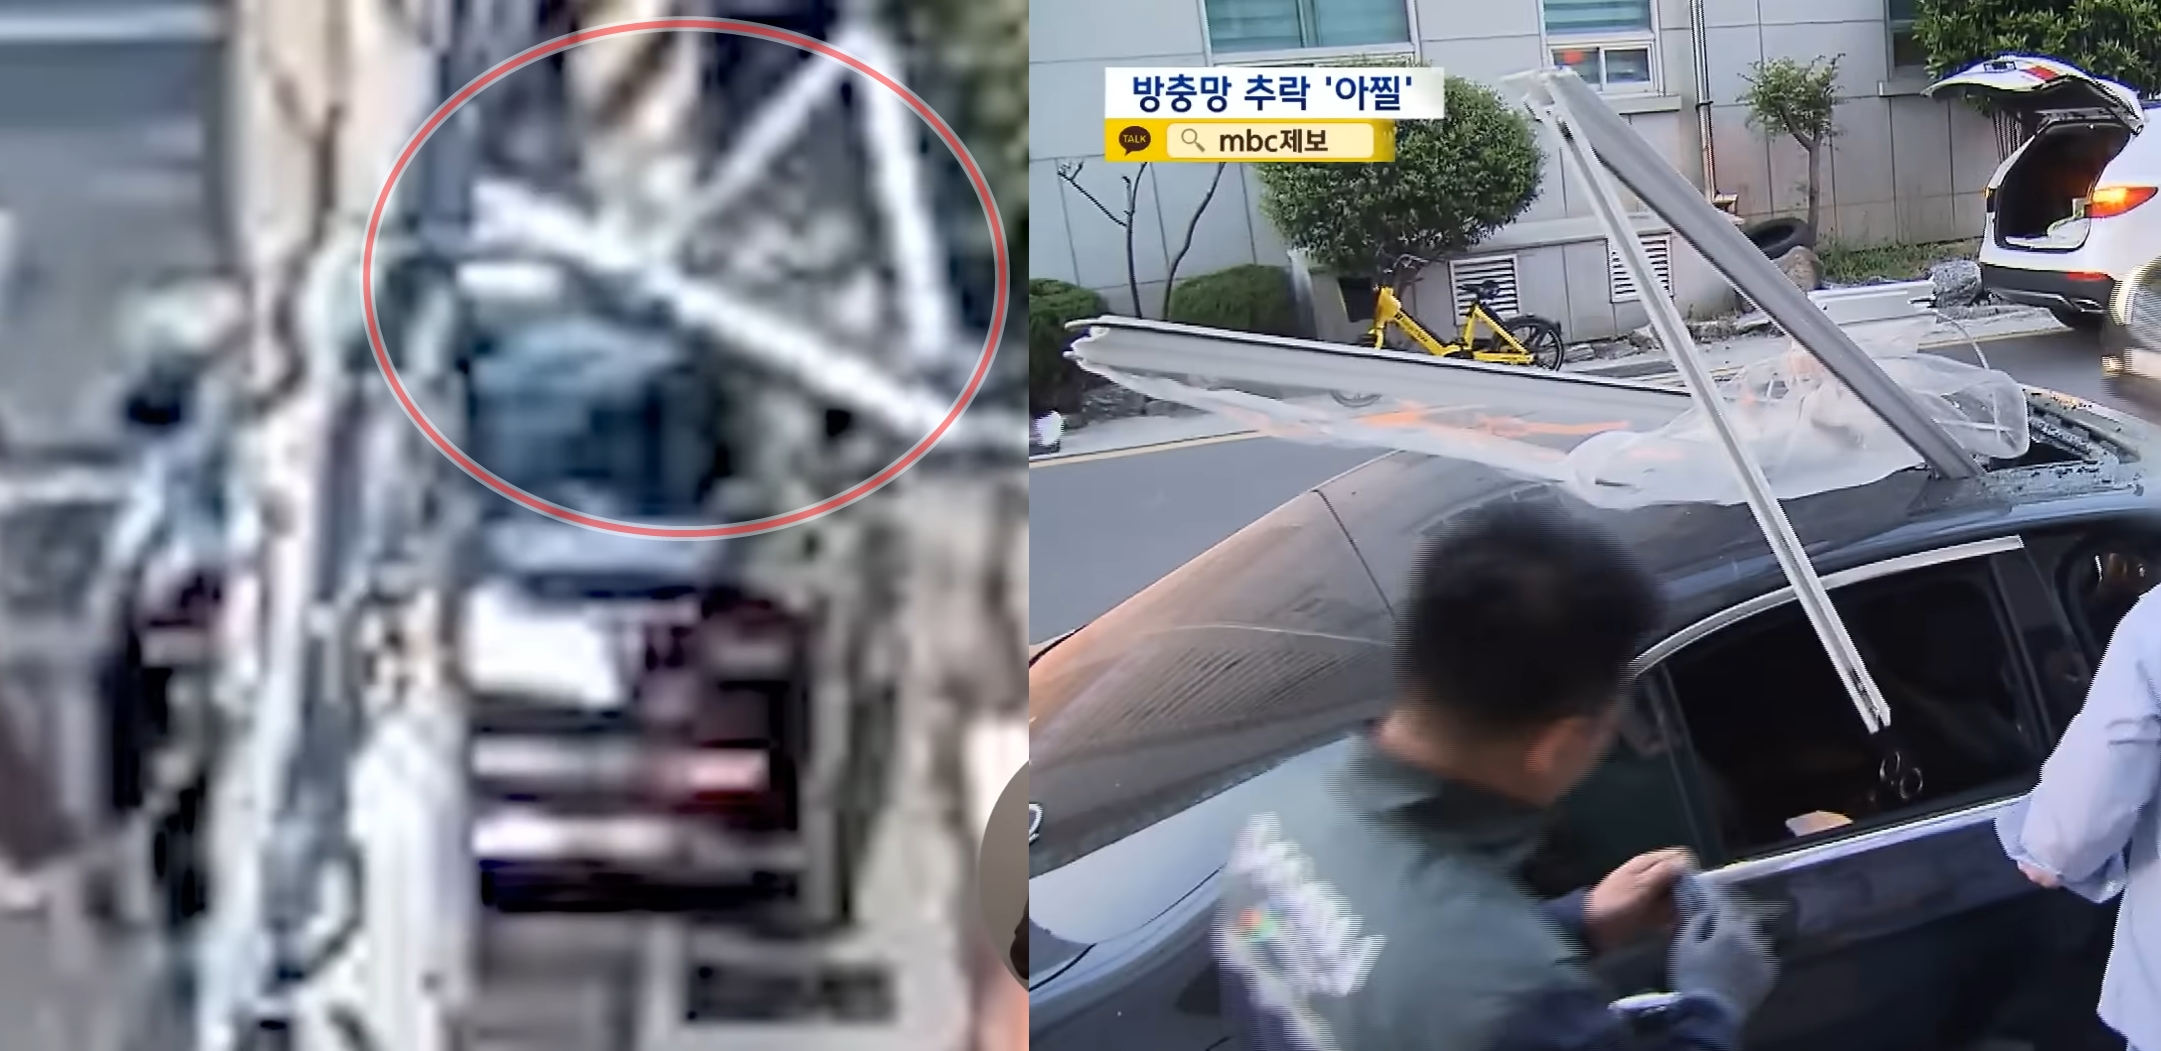 아파트에서 떨어진 방충망이 차량 지붕을 뚫고 조수석에 꽂혀 있다. MBC뉴스 캡처